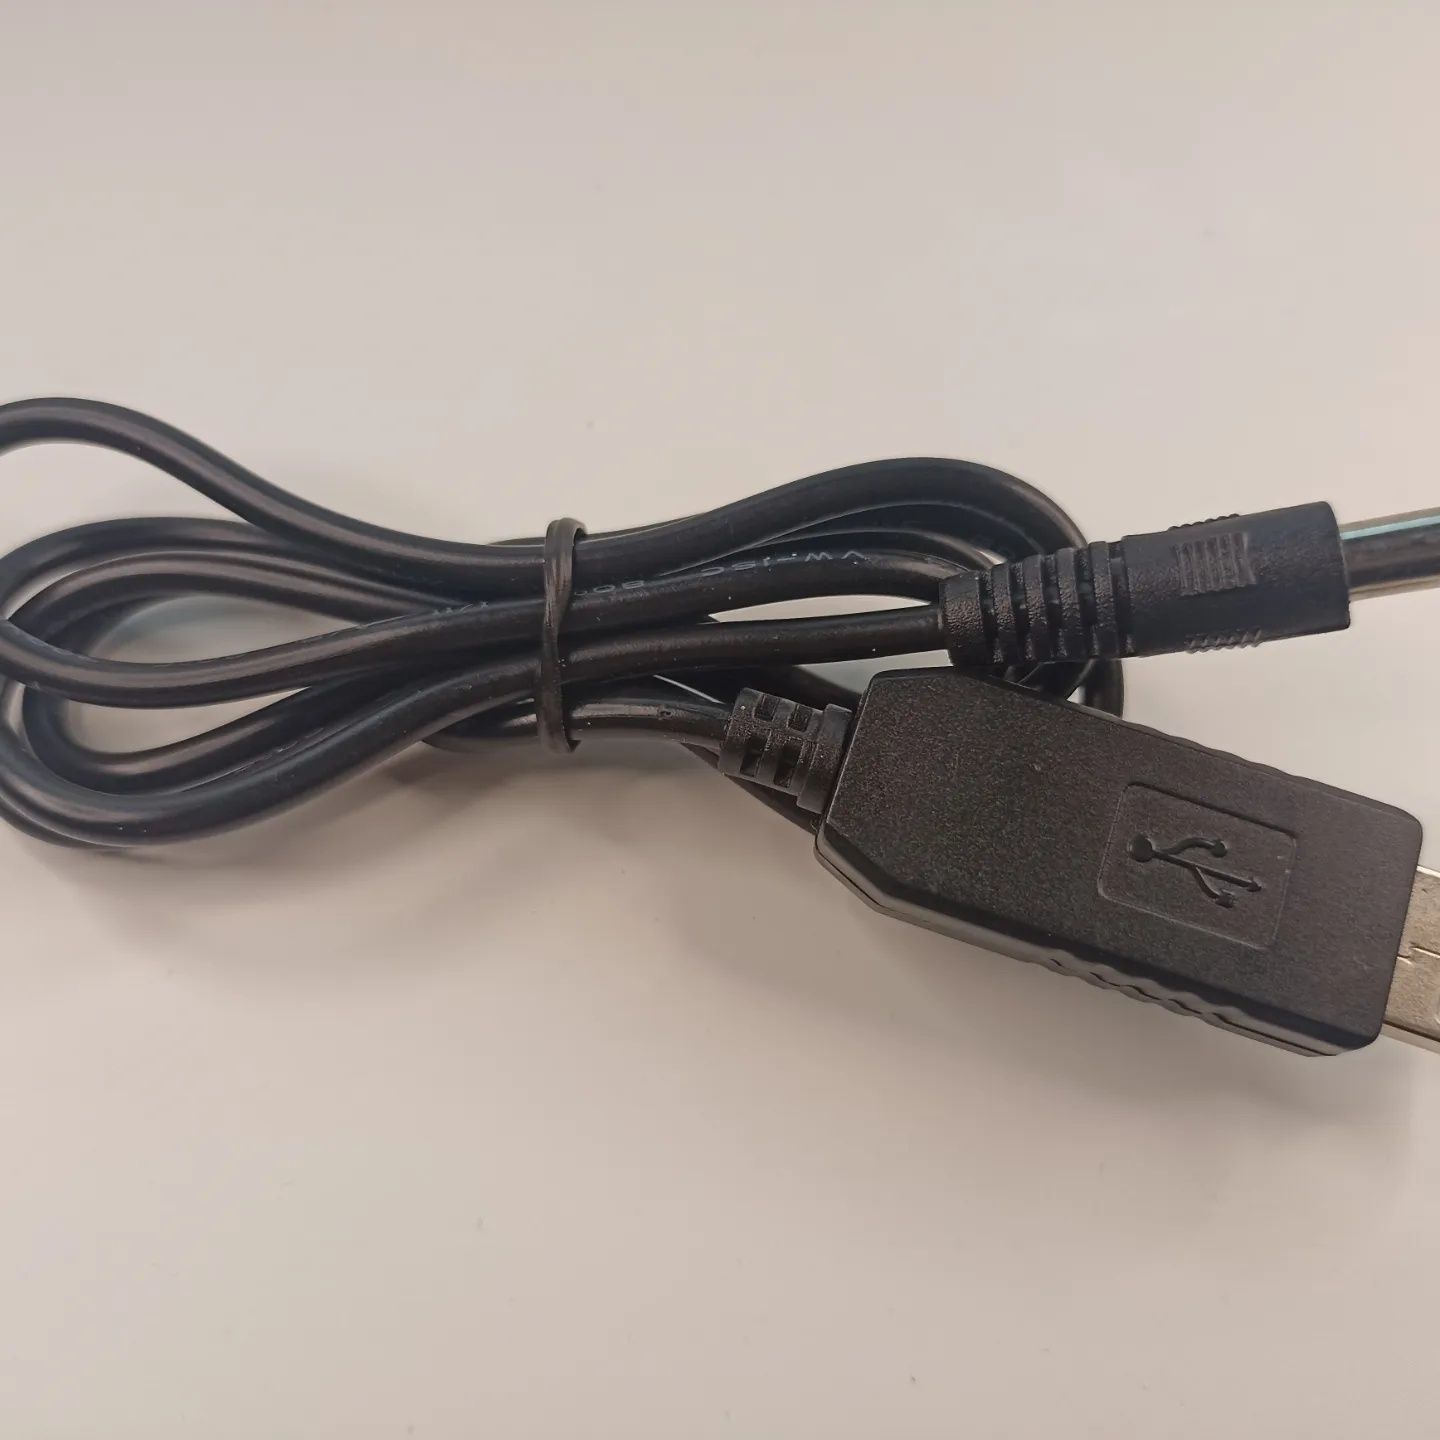 Переходник USB для роутера 5 вольт в 12 вольт